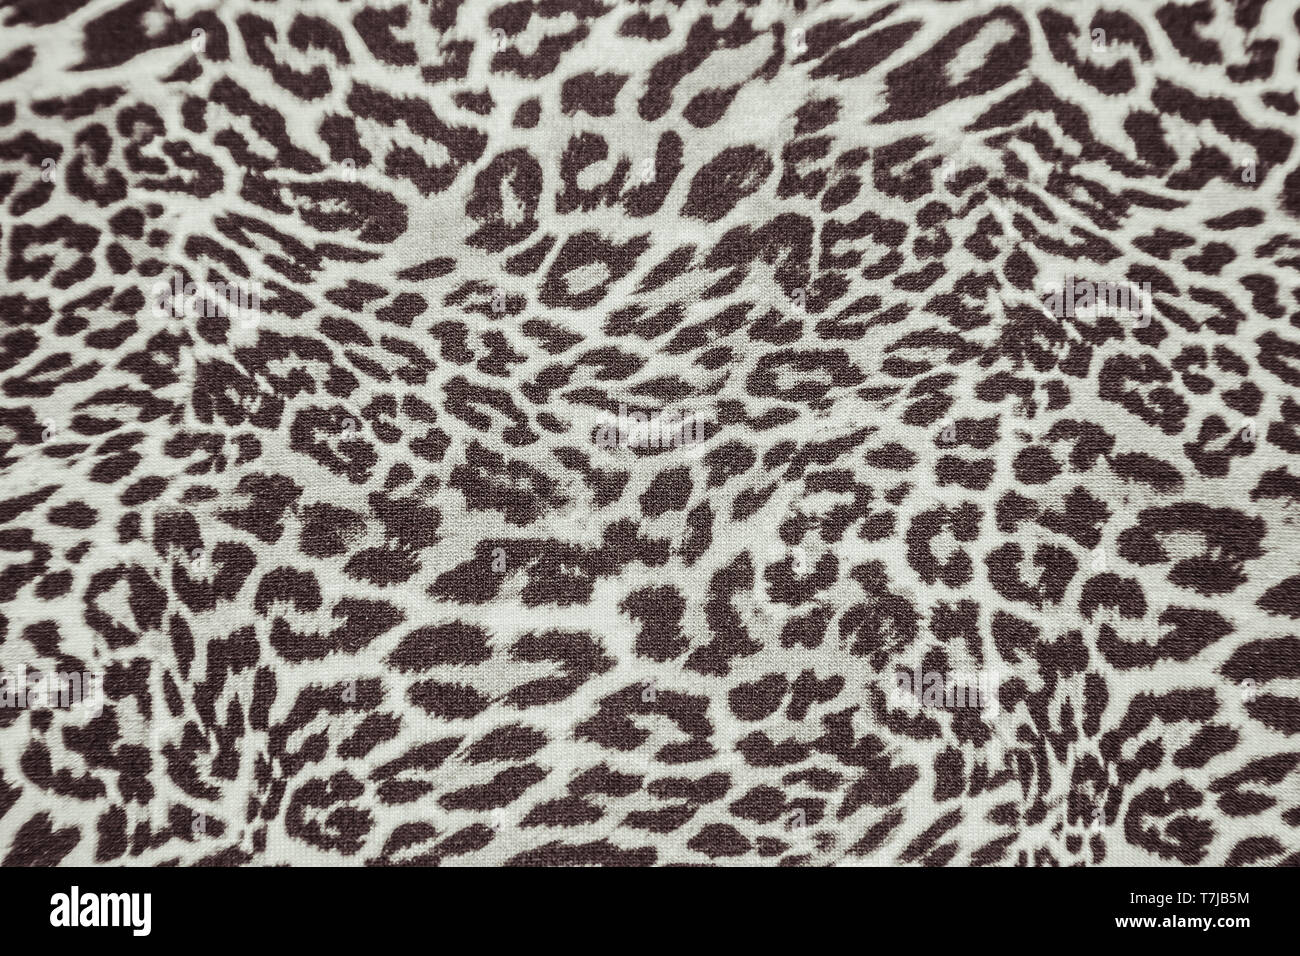 Schnee Leopard Haut Auto Sitzbezüge Set Weiß Tier Drucken